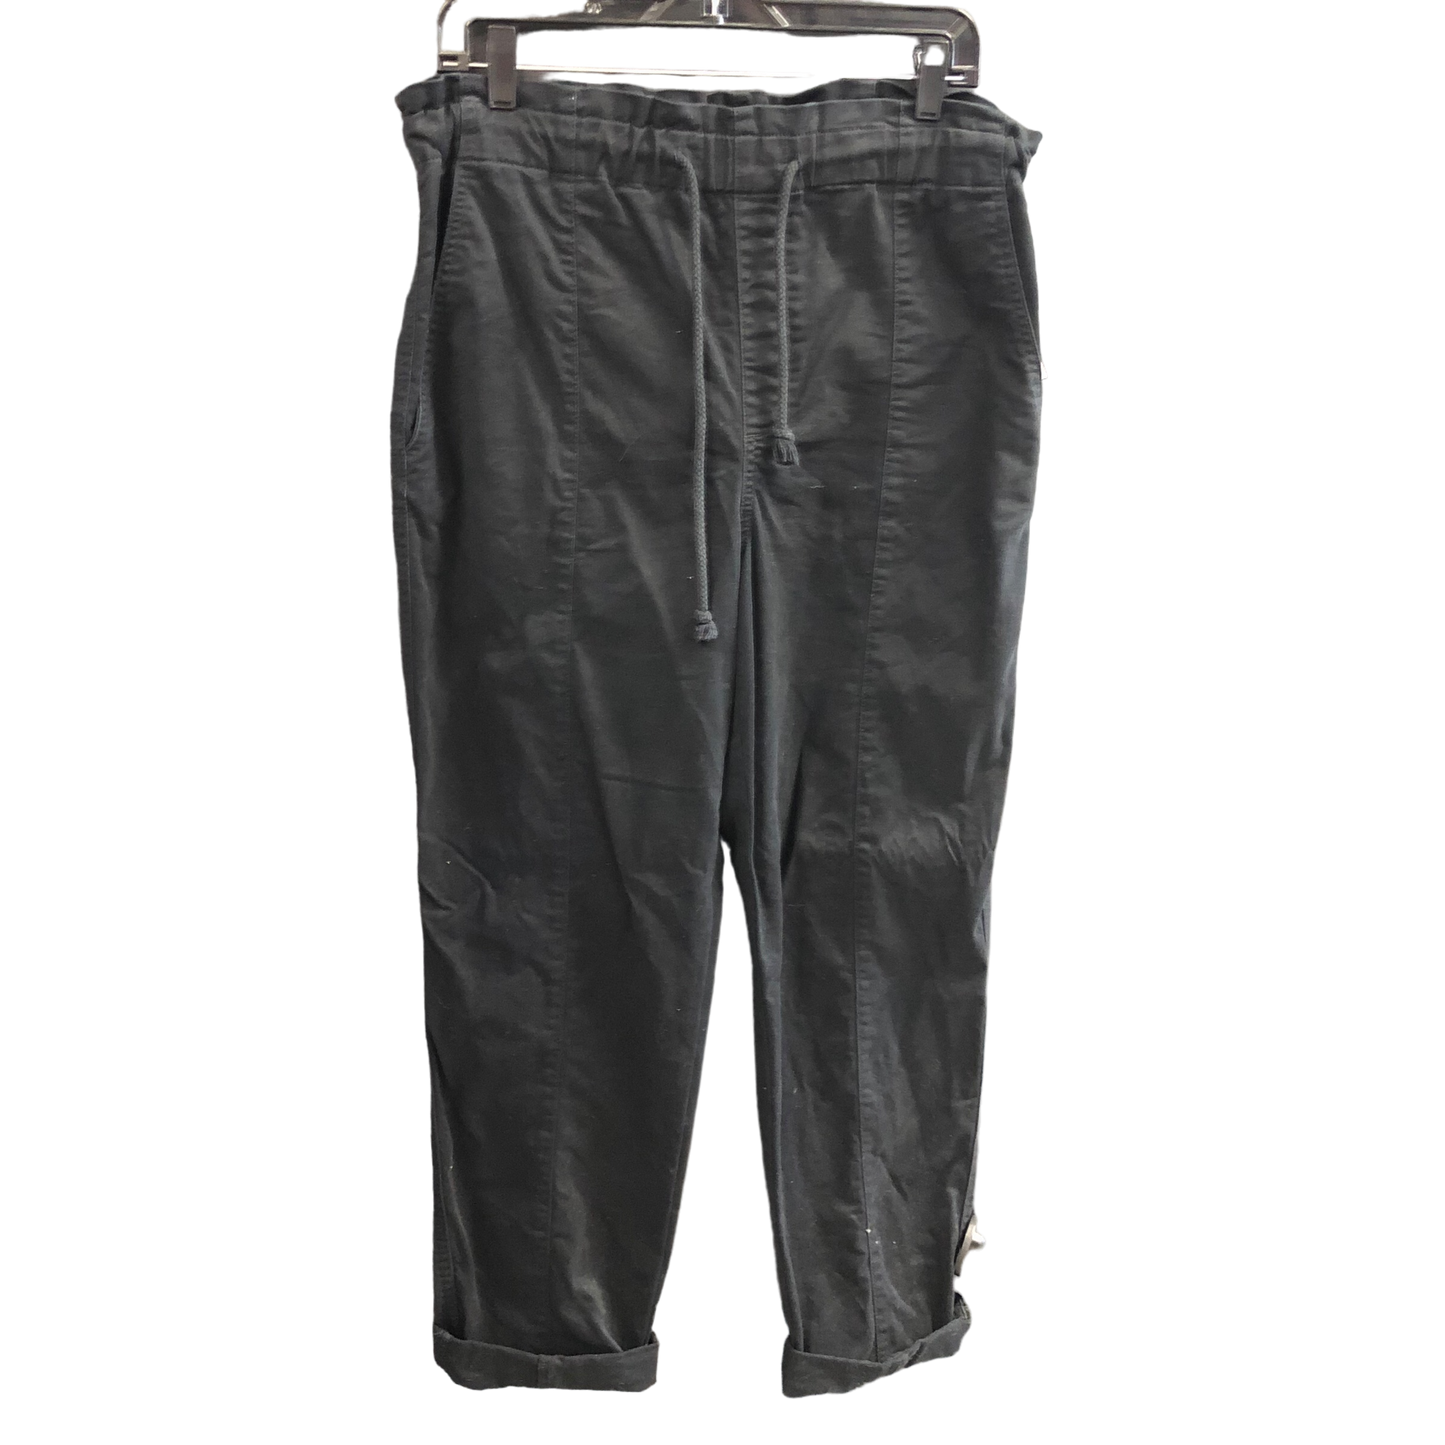 Black Pants Cargo & Utility Loft, Size M